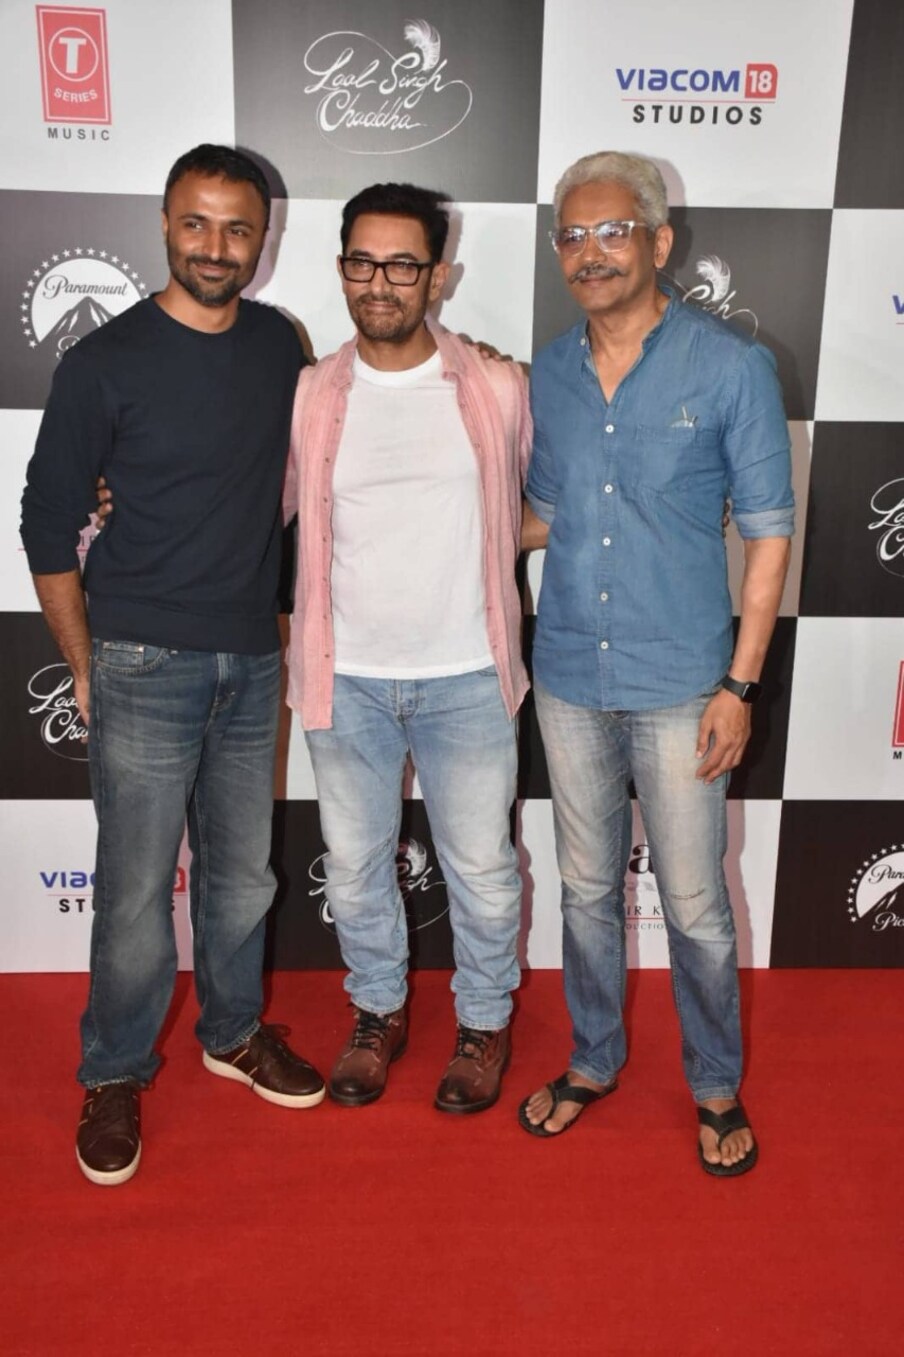  लंबे समय बाद आमिर खान की फिल्म थियेटर में लगी है. इस फिल्म से जुड़ी पूरी टीम के साथ-साथ बॉलीवुड को भी काफी उम्मीदें हैं. (फोटो साभार: VIRAL BHAYANI)